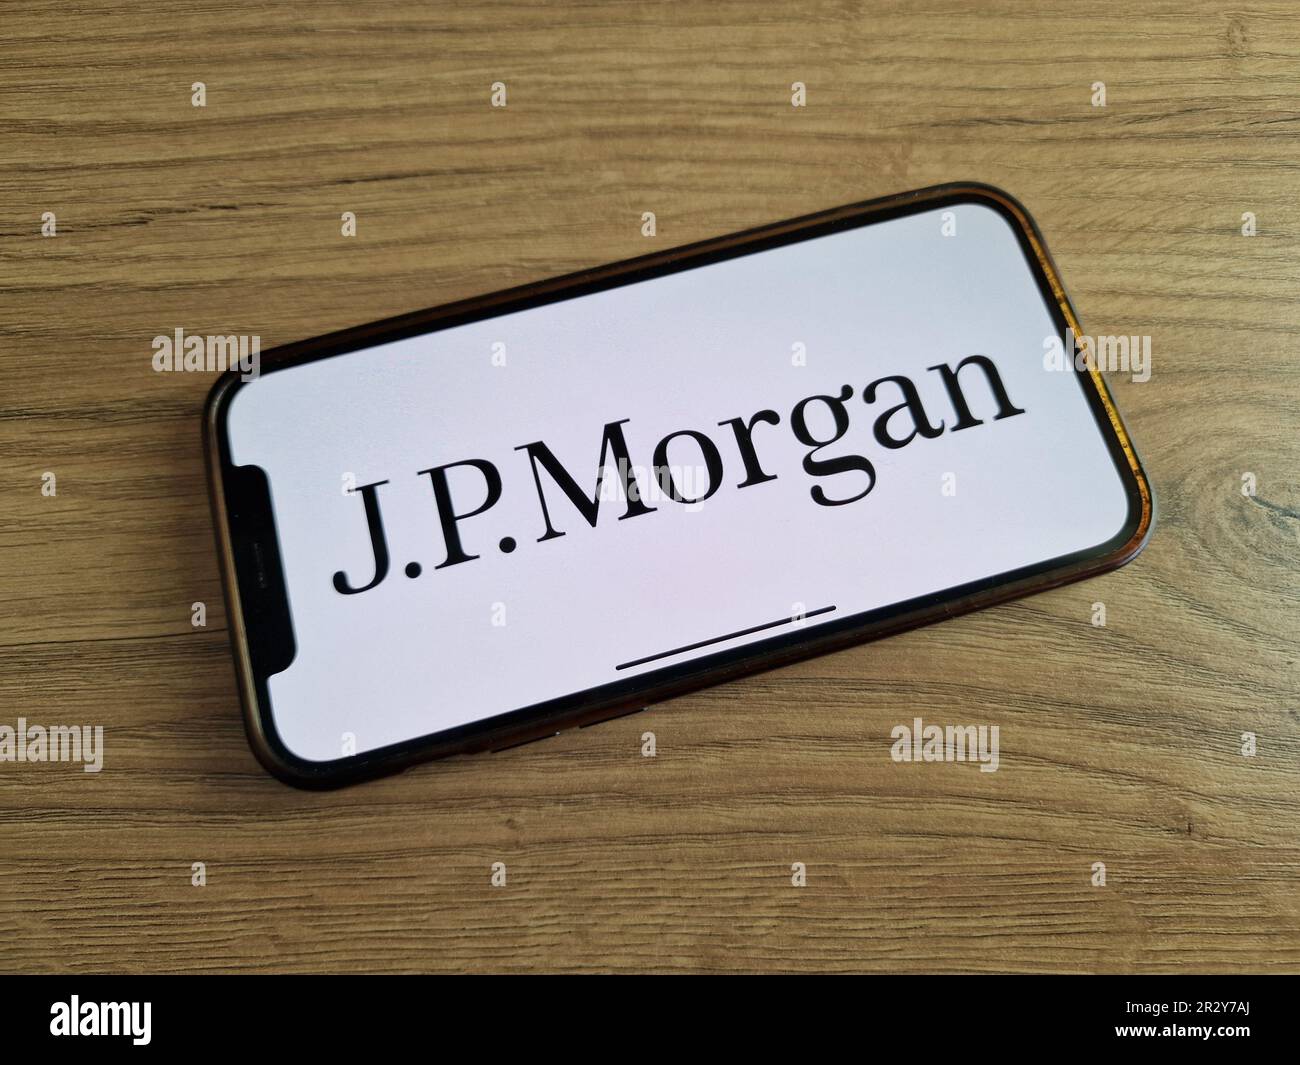 KONSKIE, Polonia - 20 maggio 2023: Logo della società JP Morgan Financial Services visualizzato sullo schermo del telefono cellulare Foto Stock